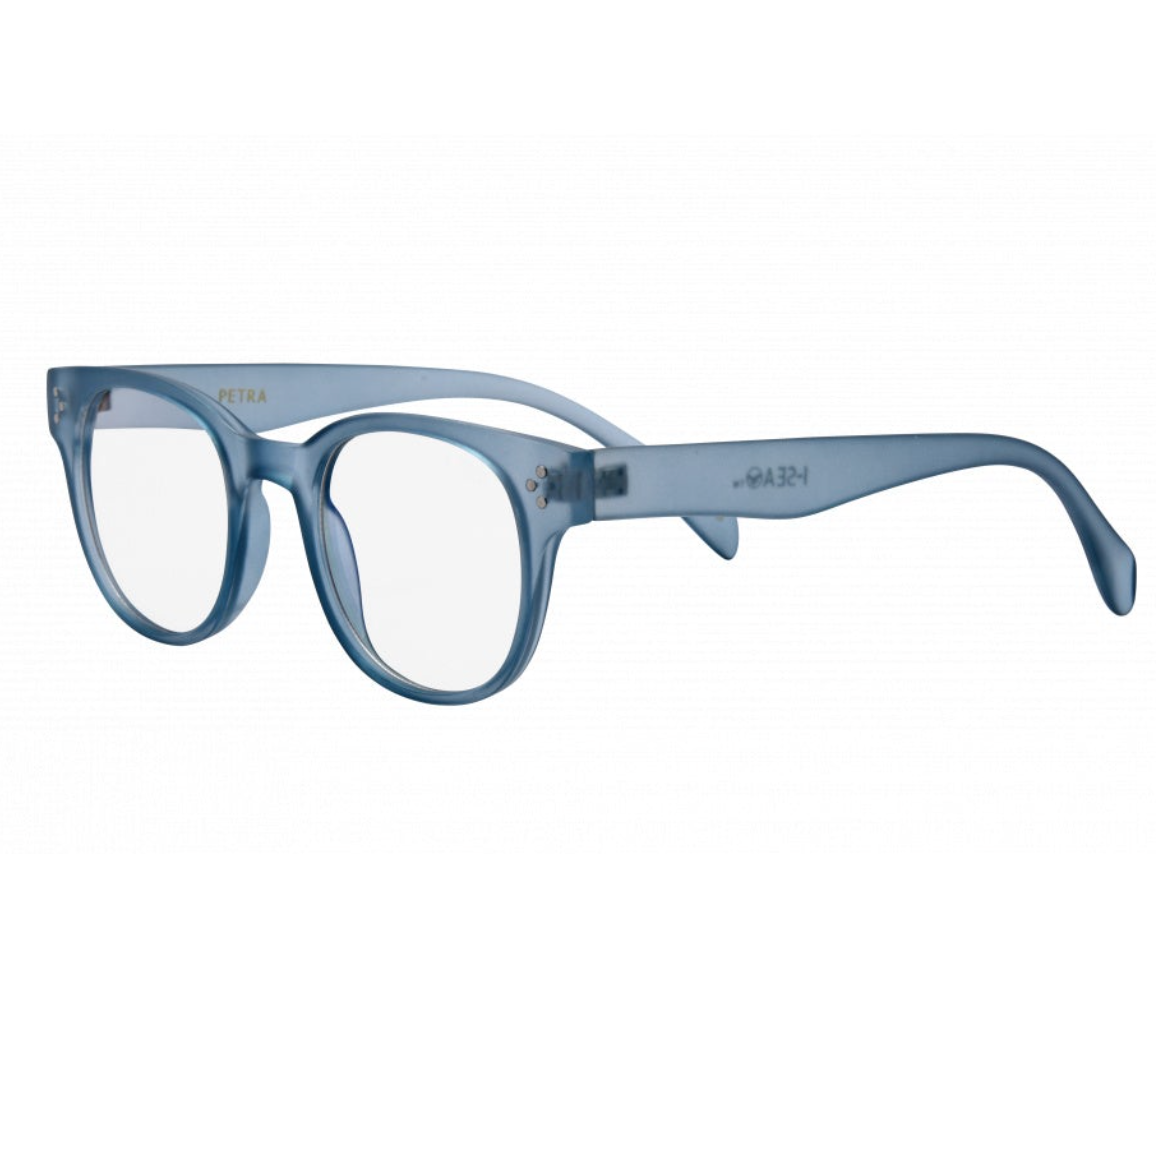 Petra iSea Blue Light Glasses - Baby Blue - Clothe Boutique